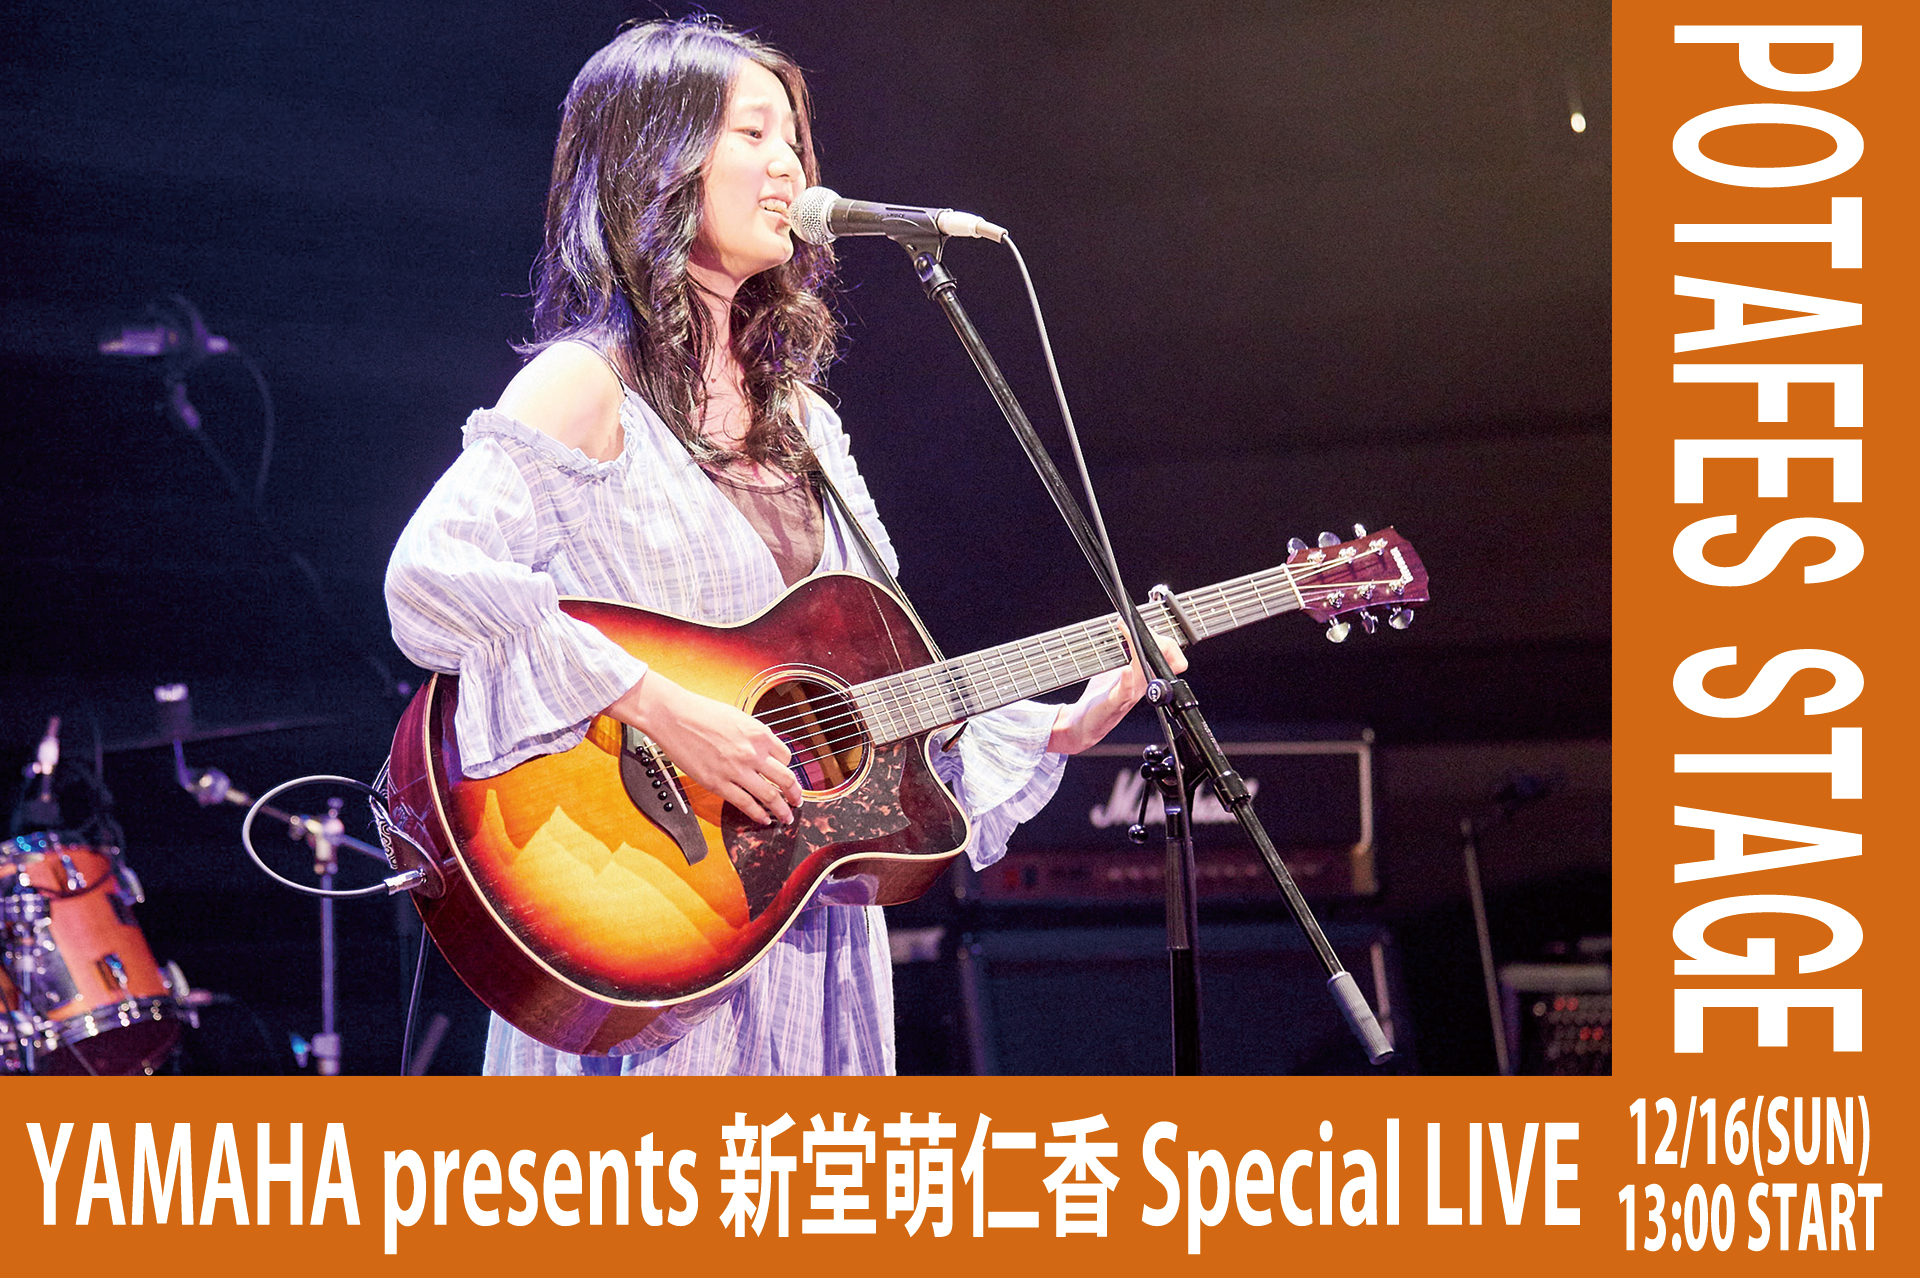 【ステージ情報】YAMAHA presents 新堂 萌仁香 Special LIVE